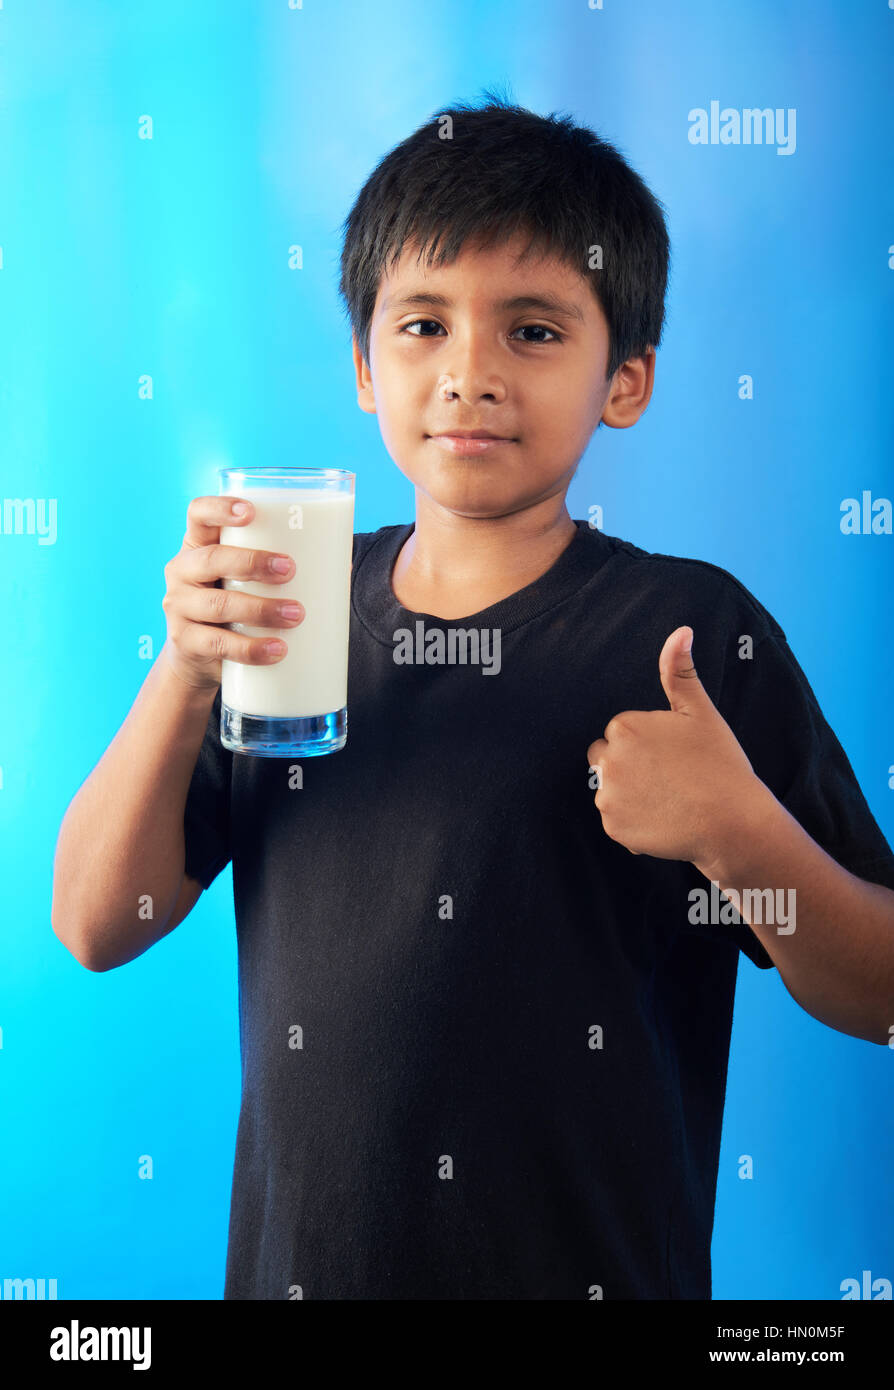 Junge mit Mlik auftauchend Daumen auf blauem Hintergrund Stockfoto